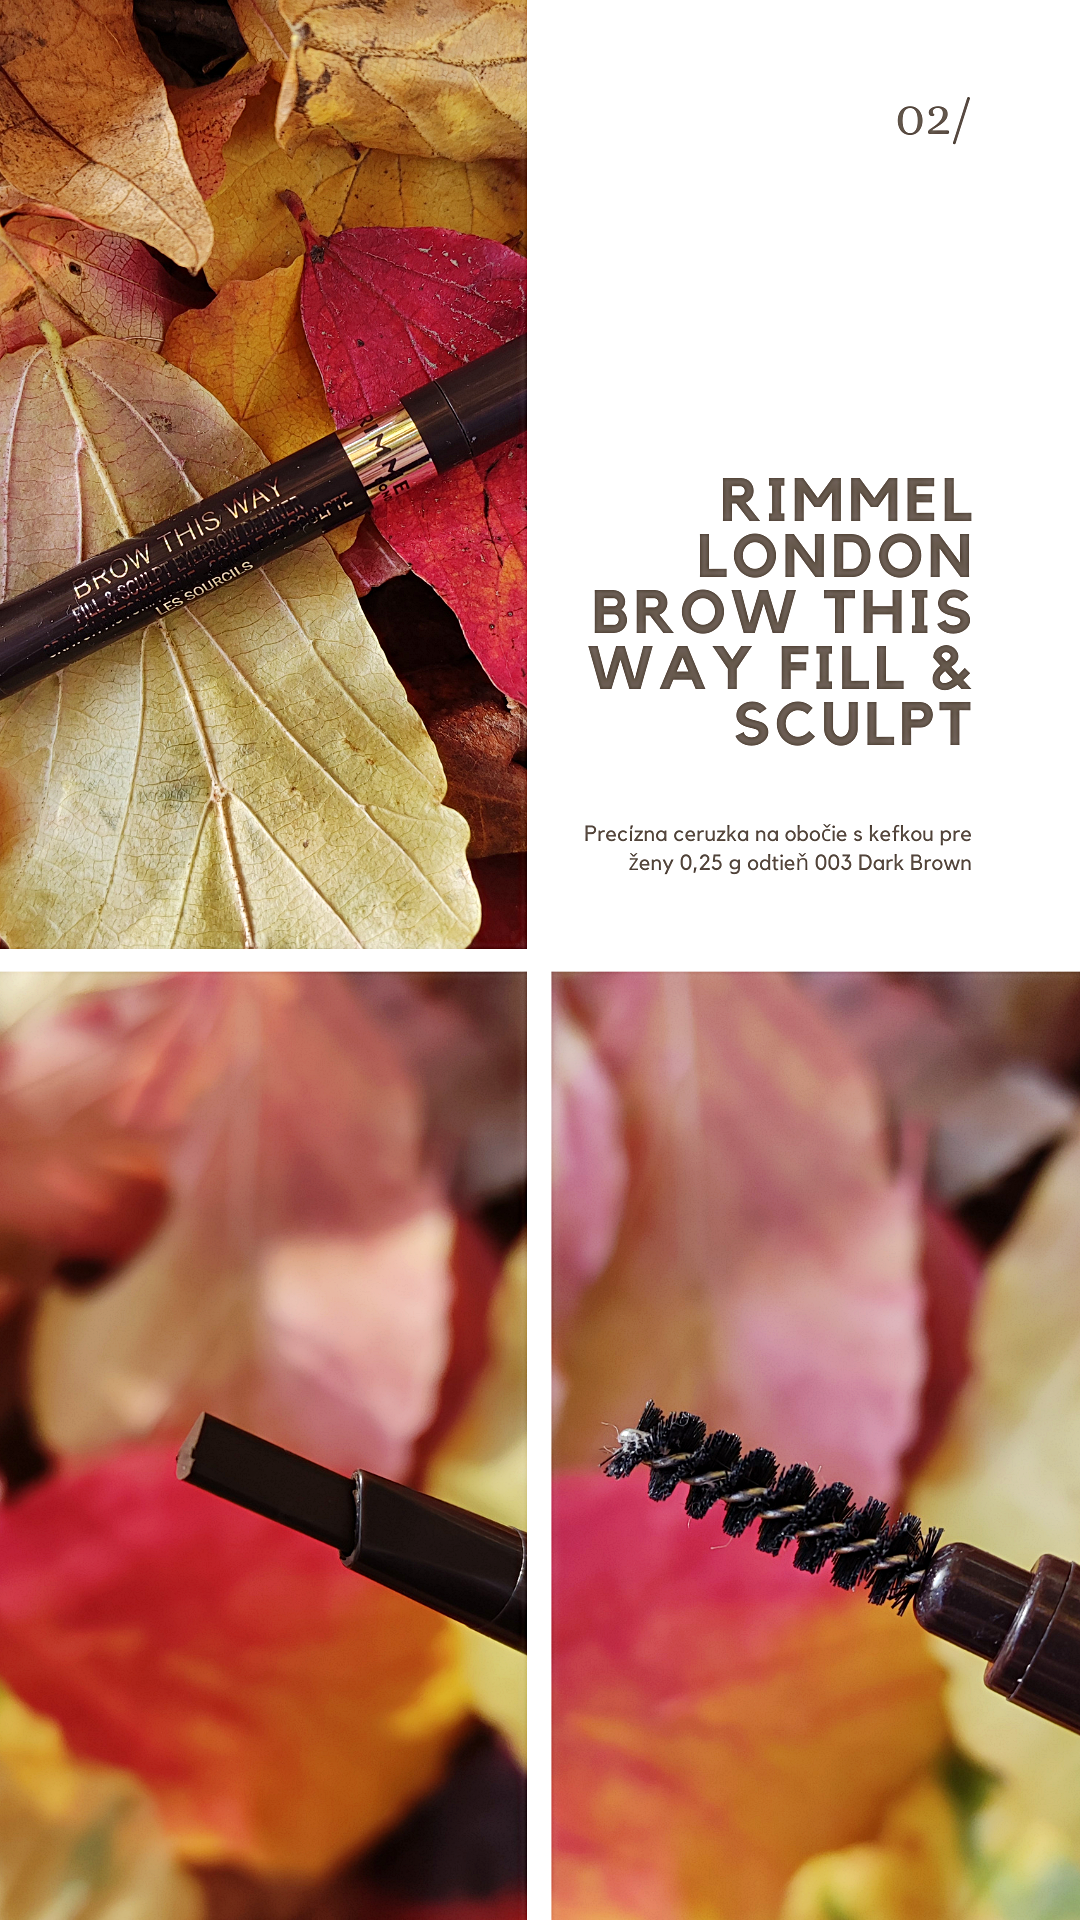 Rimmel London Brow This Way Fill & Sculpt precízna ceruzka na obočie s kefkou odtieň 003 Dark Brown